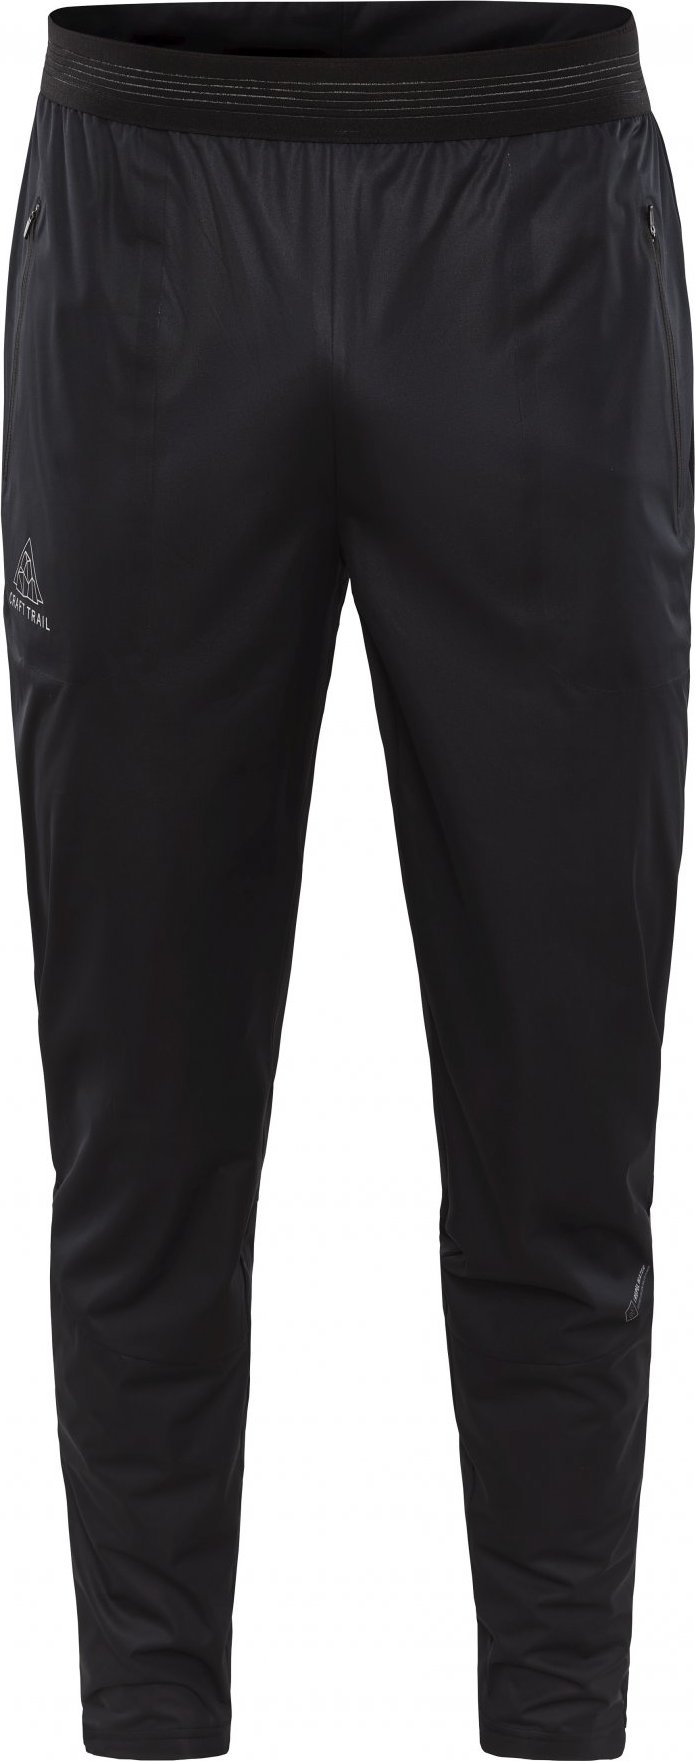 Pánské běžecké kalhoty CRAFT Pro Hydro černé Velikost: M